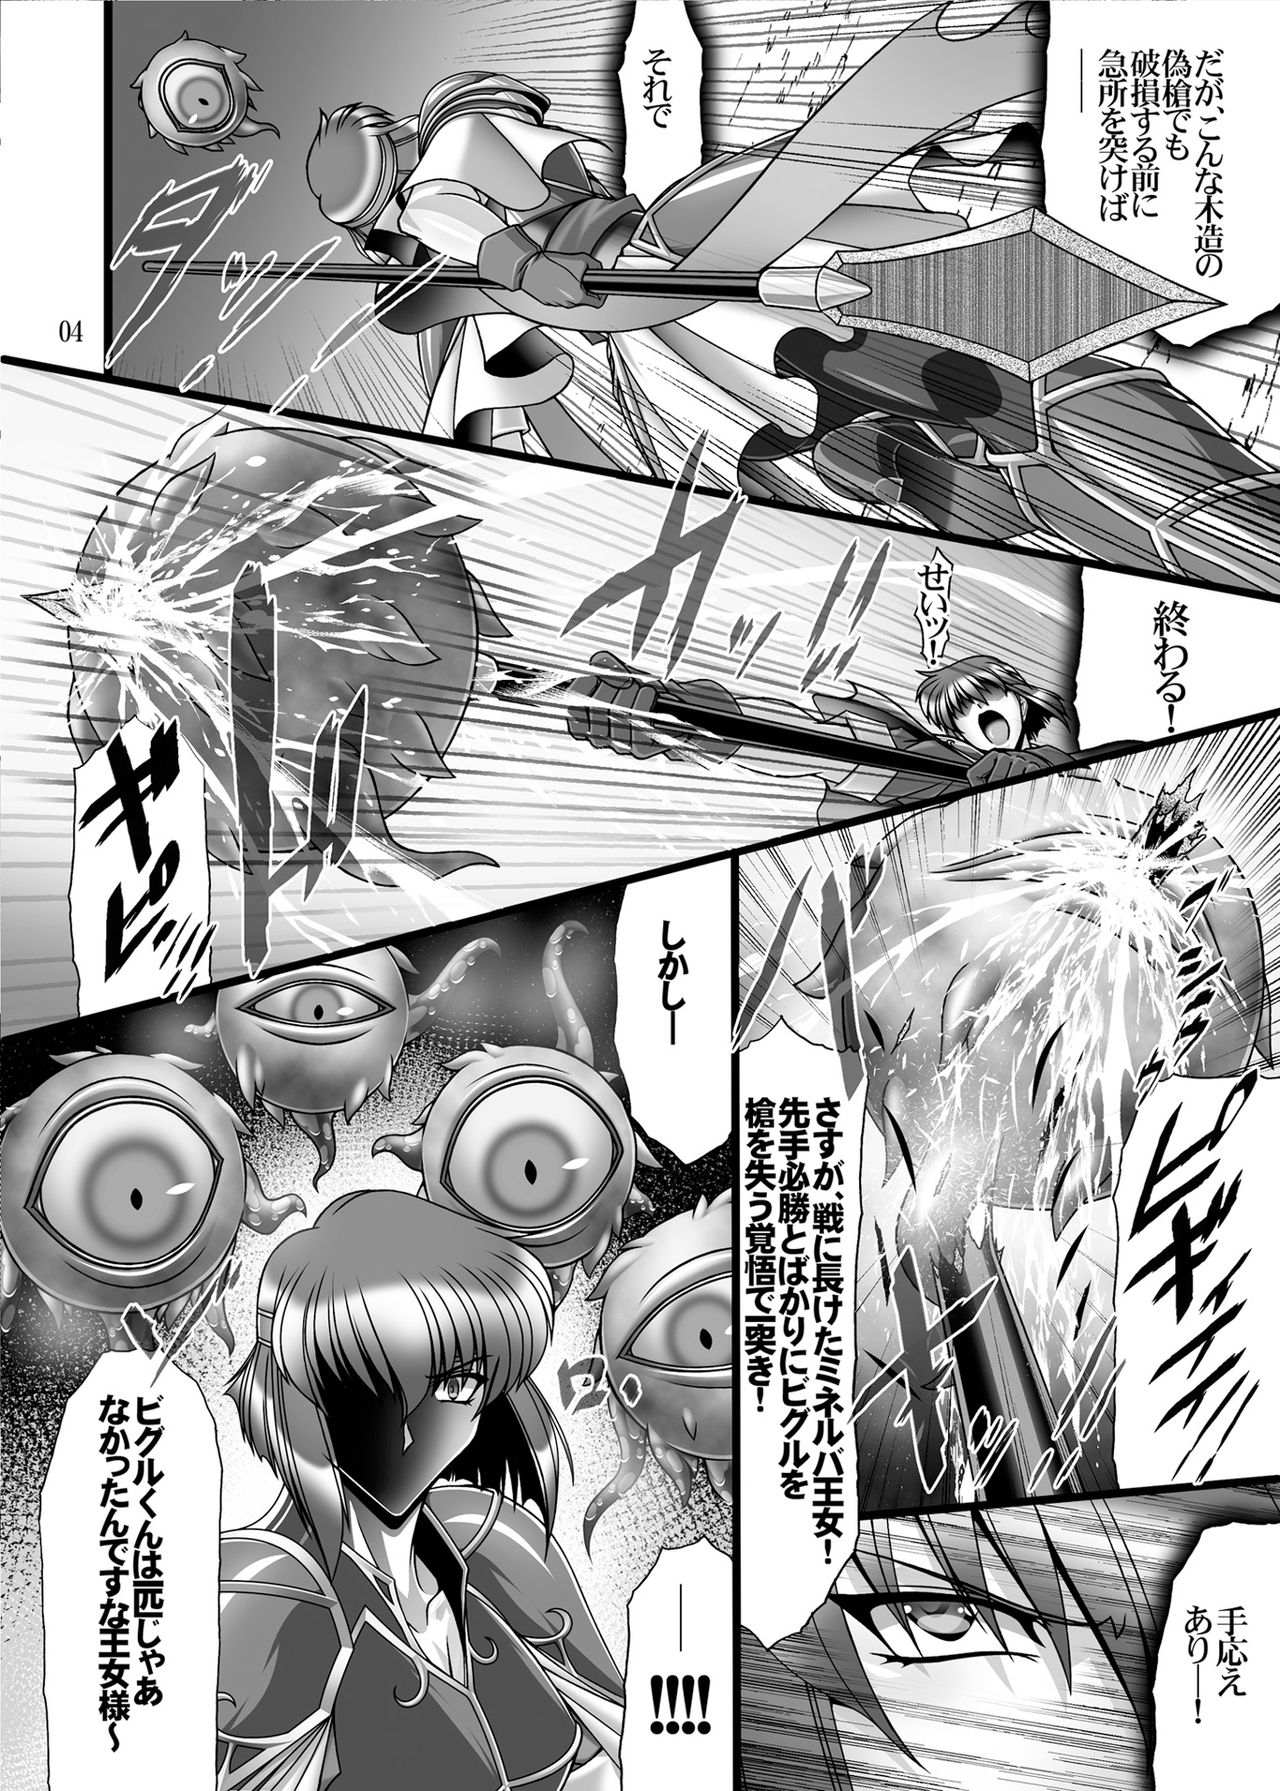 [BOBCATERS (Hamon Ai, Syunzo, Yajiro Masaru)] Oshi Chara Emblem (Fire Emblem) [Digital] page 3 full